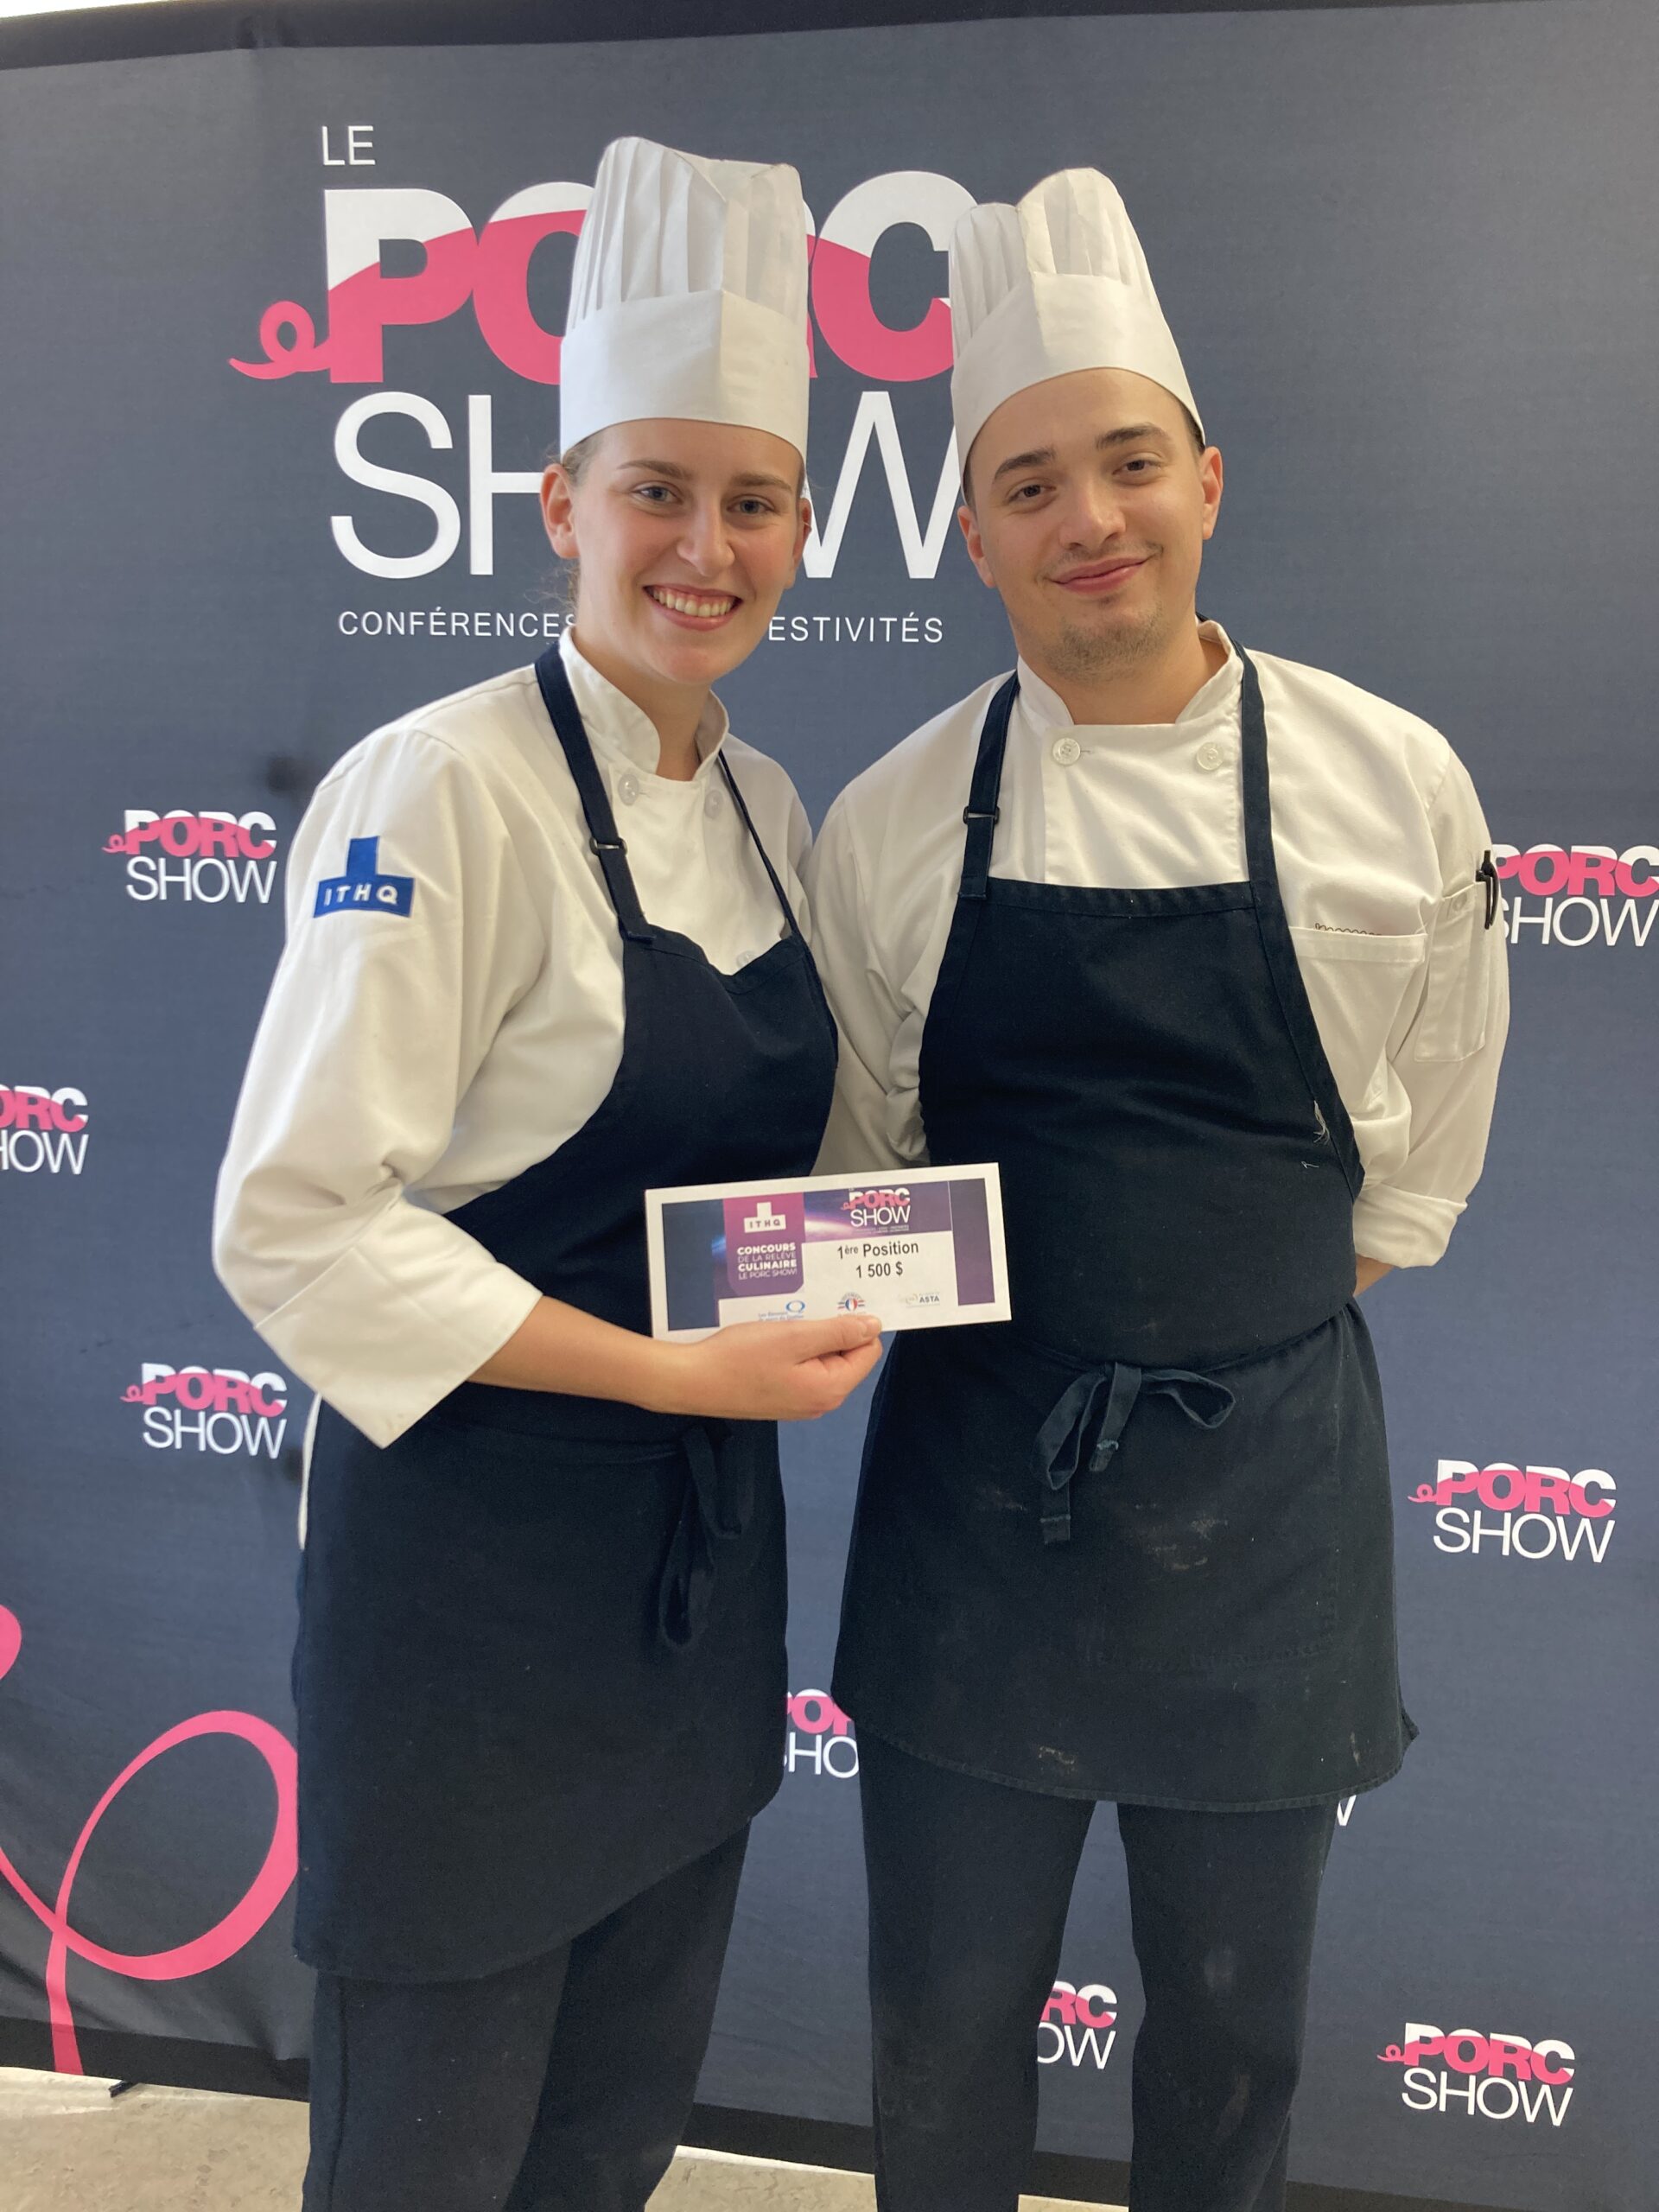 Gagnants du concours de la relève culinaire Le Porc Show 2022